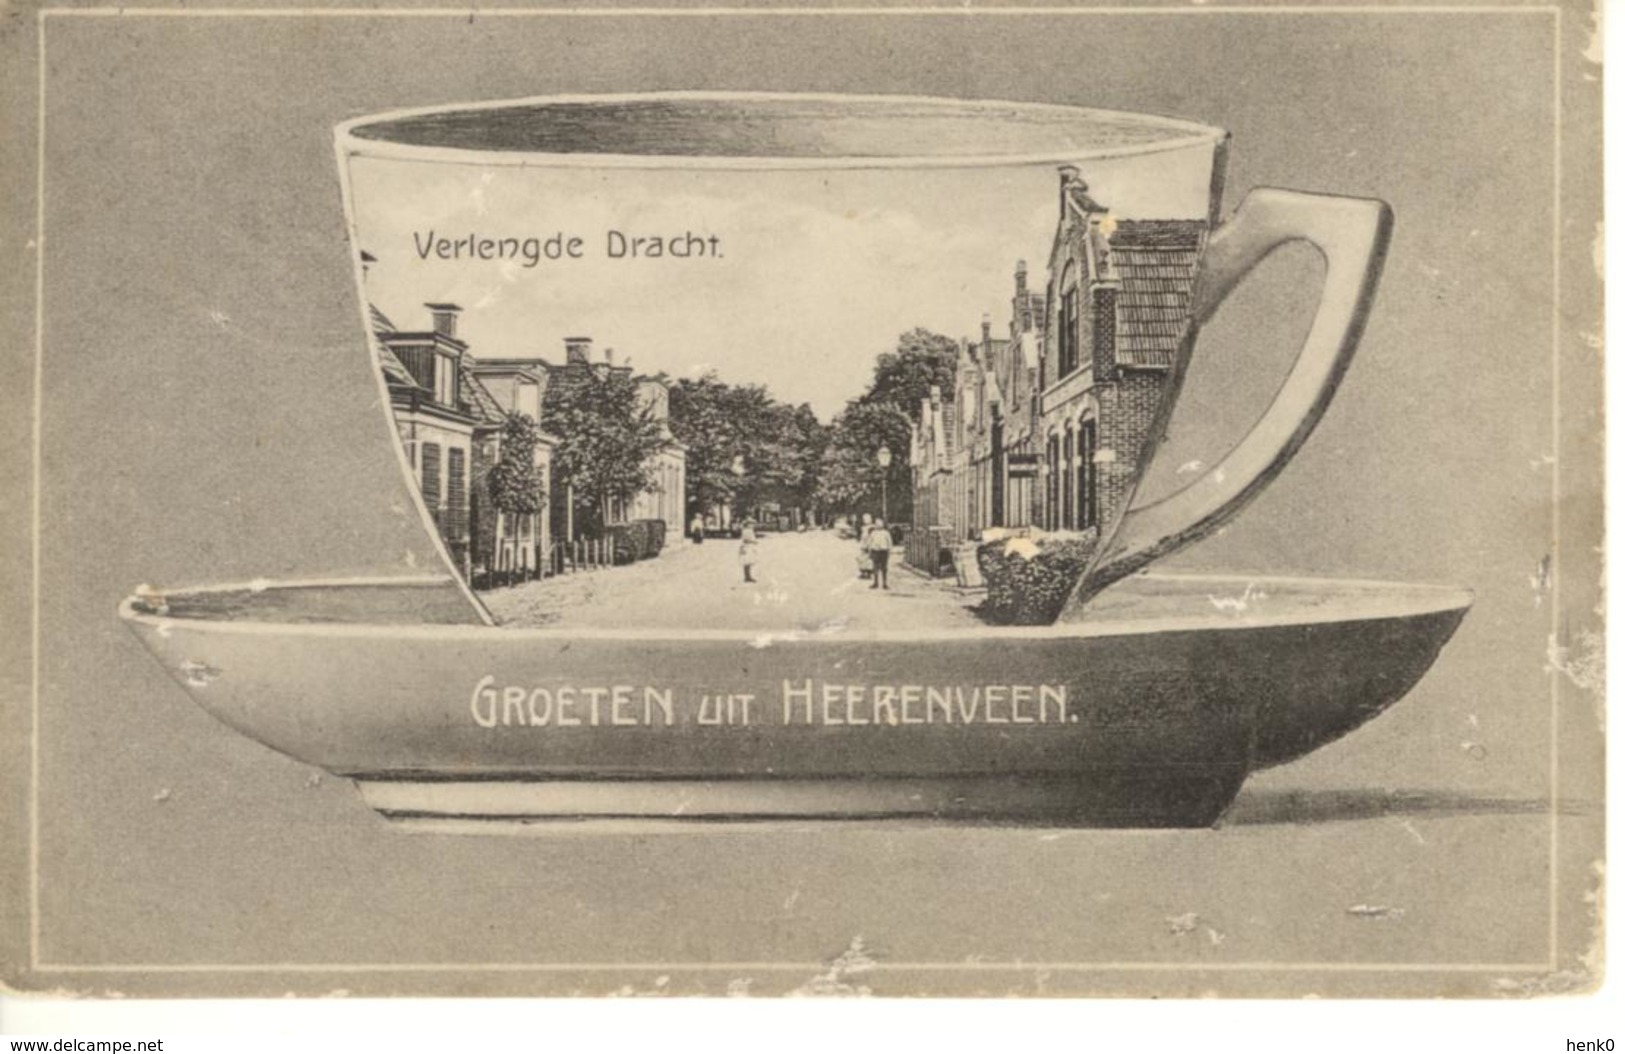 Heerenveen Verlengde Dracht Koffiekopje D126 - Heerenveen